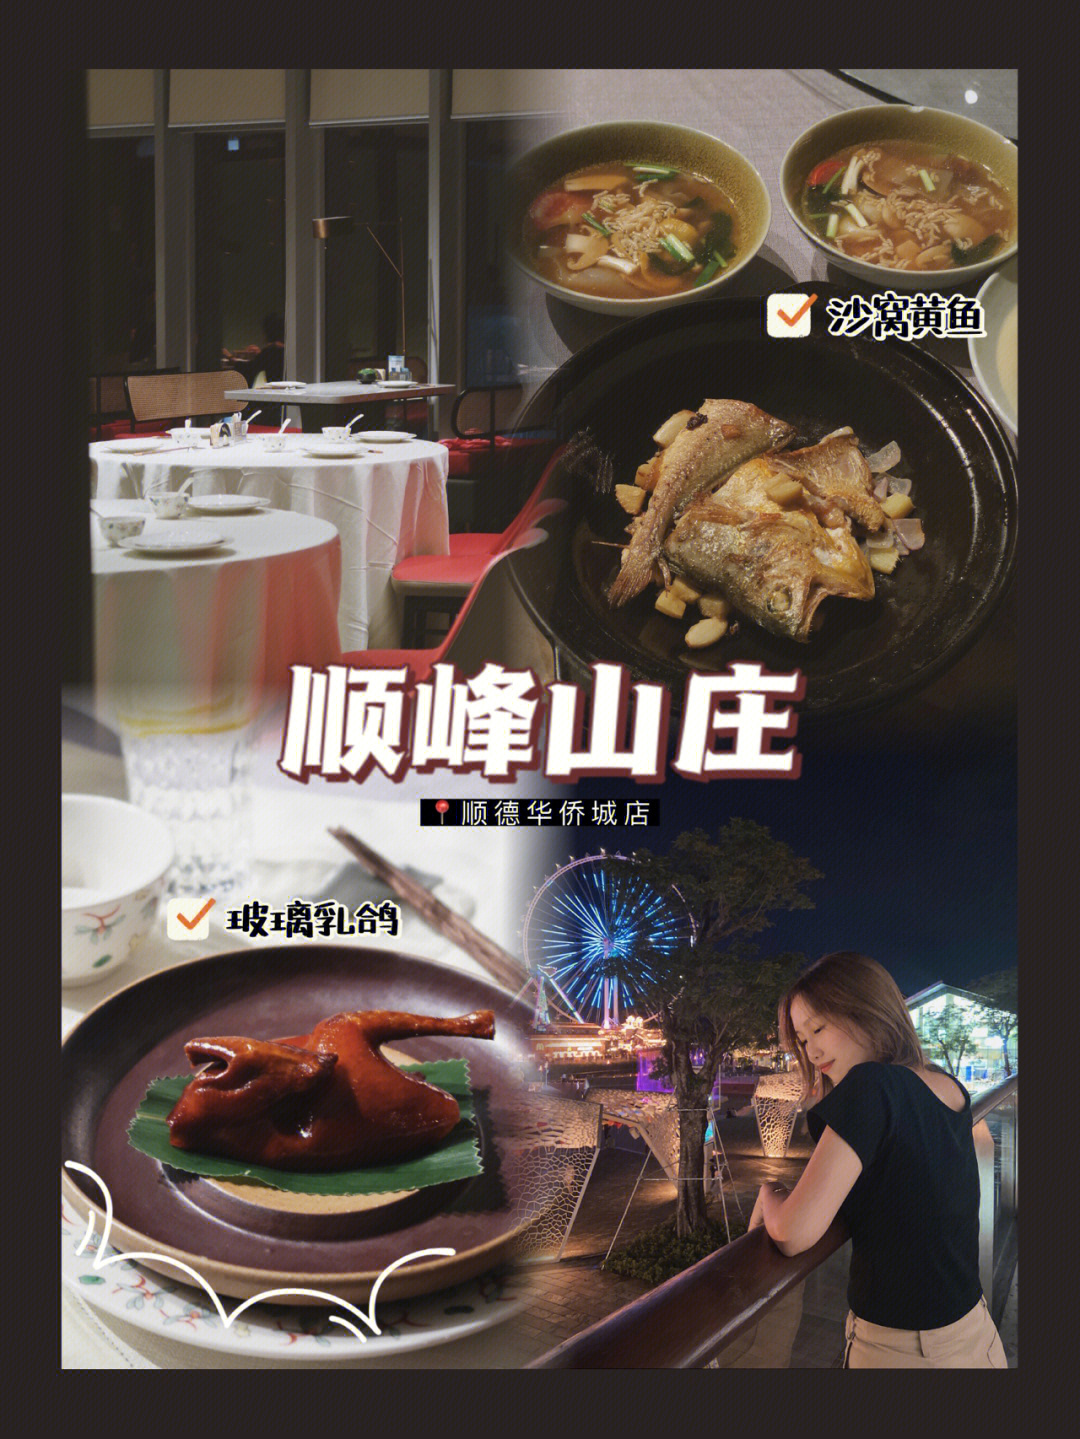 顺峰山庄菜单图片